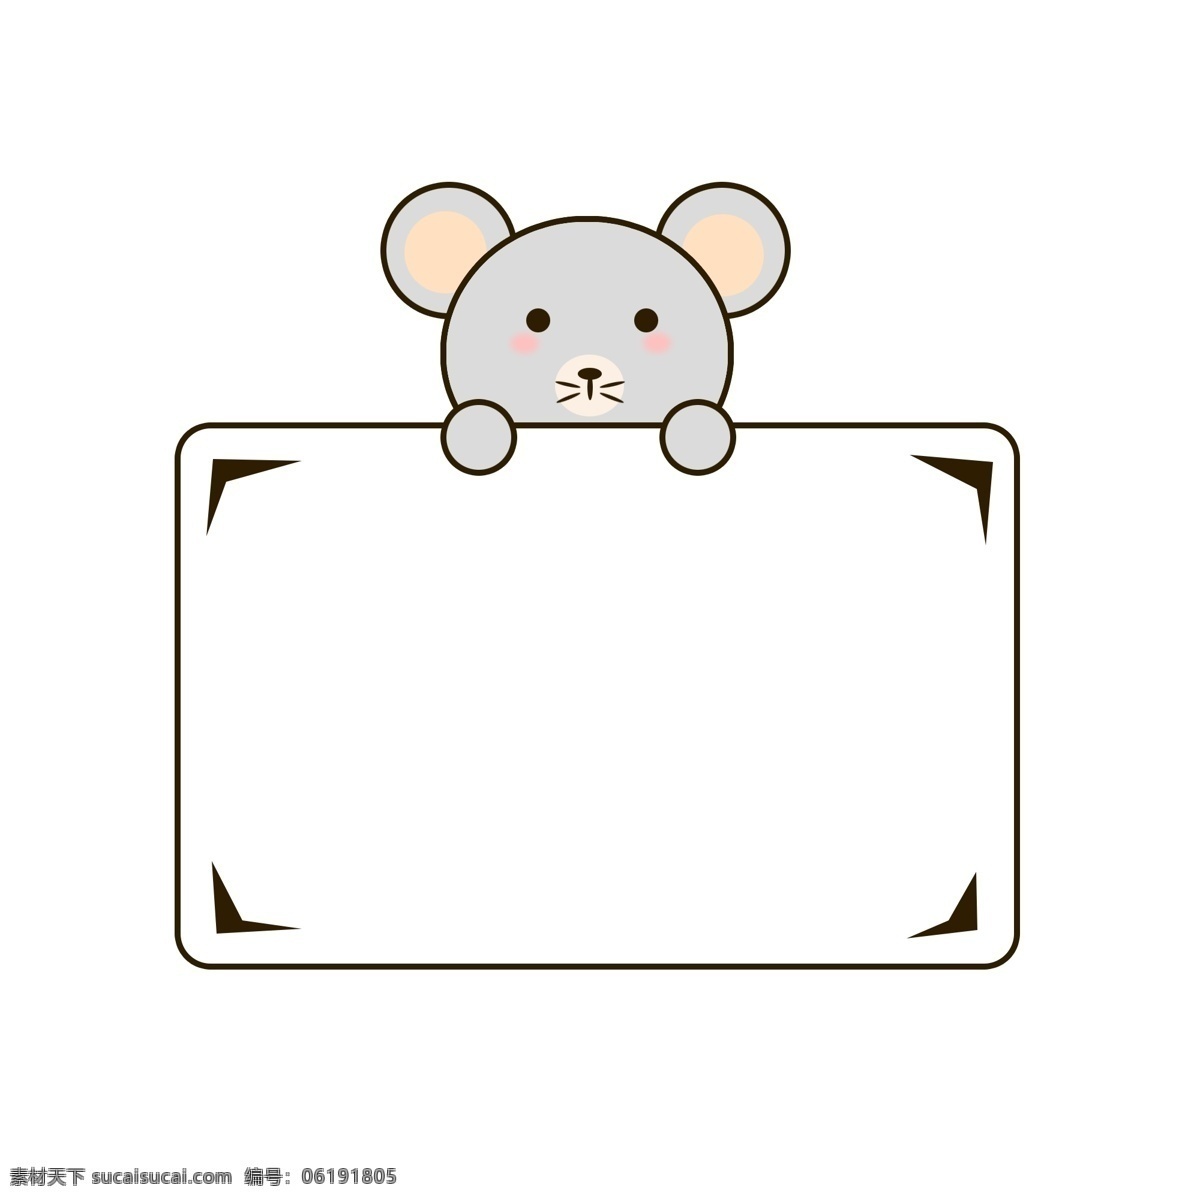 卡通 动物 小 老鼠 边框 可爱 矢量 灰色 矩形 圆角 小老鼠 鼠 三角 元素